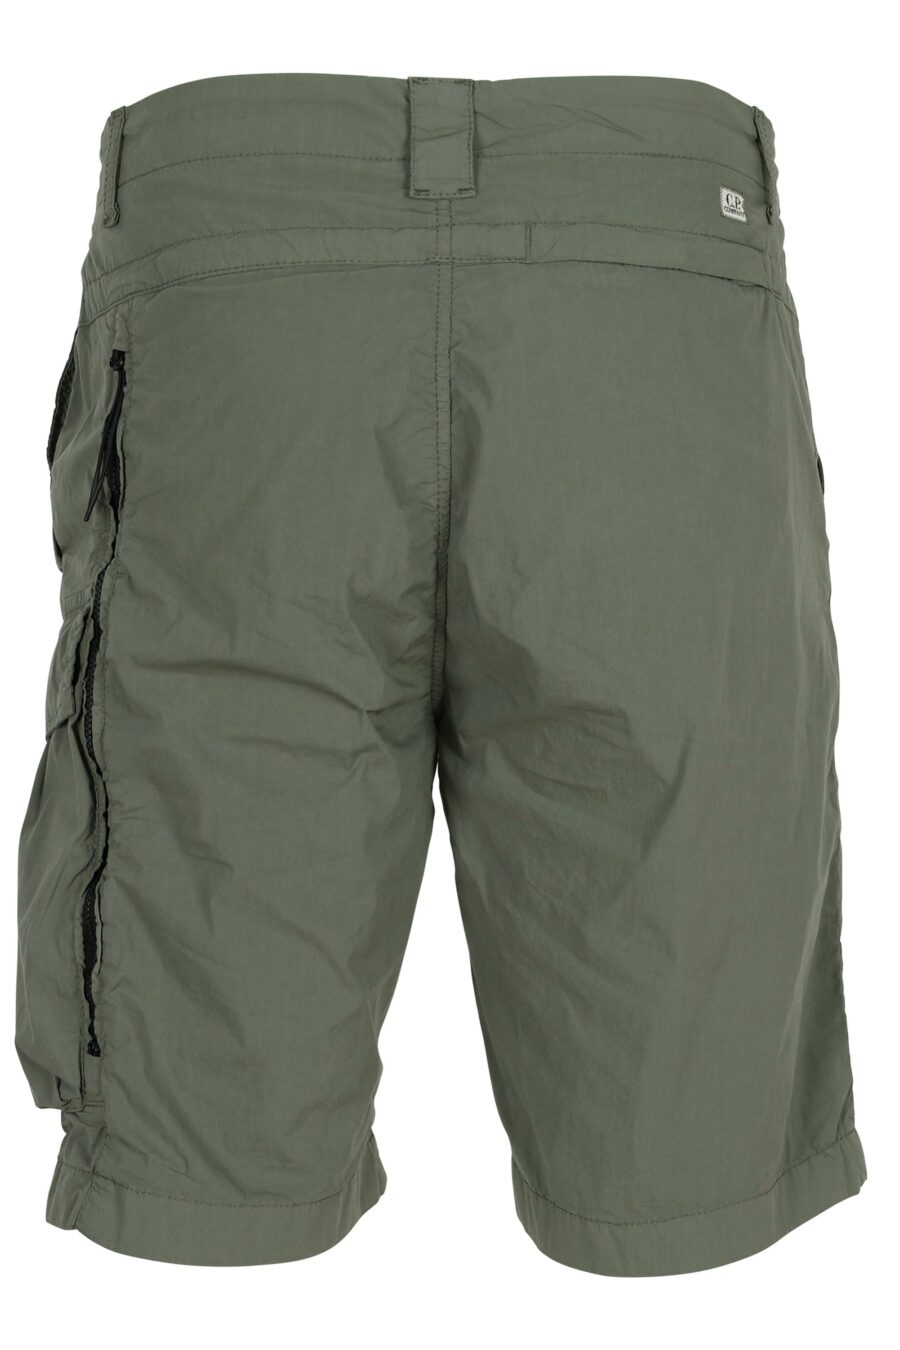 Pantalón corto midi verde grisaceo con minilogo lente - 7620943786422 1